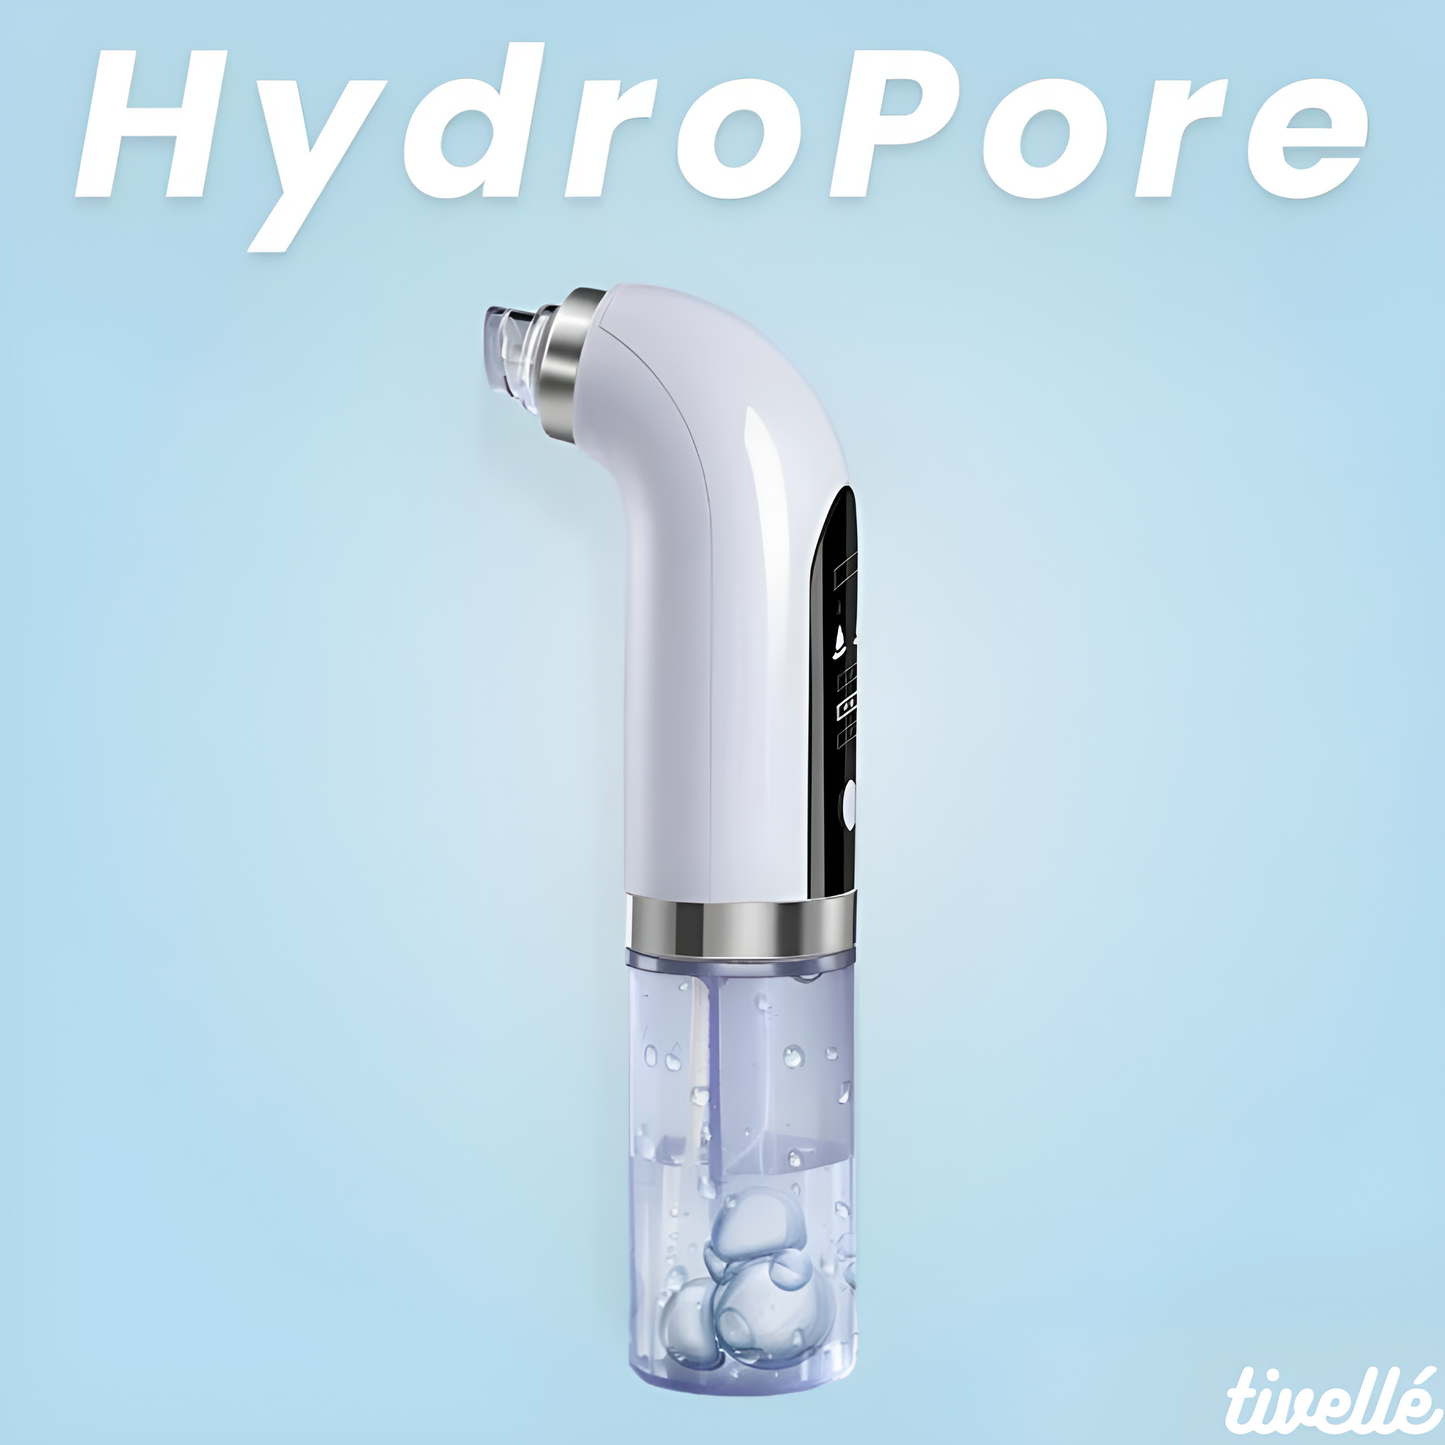 HydroPore